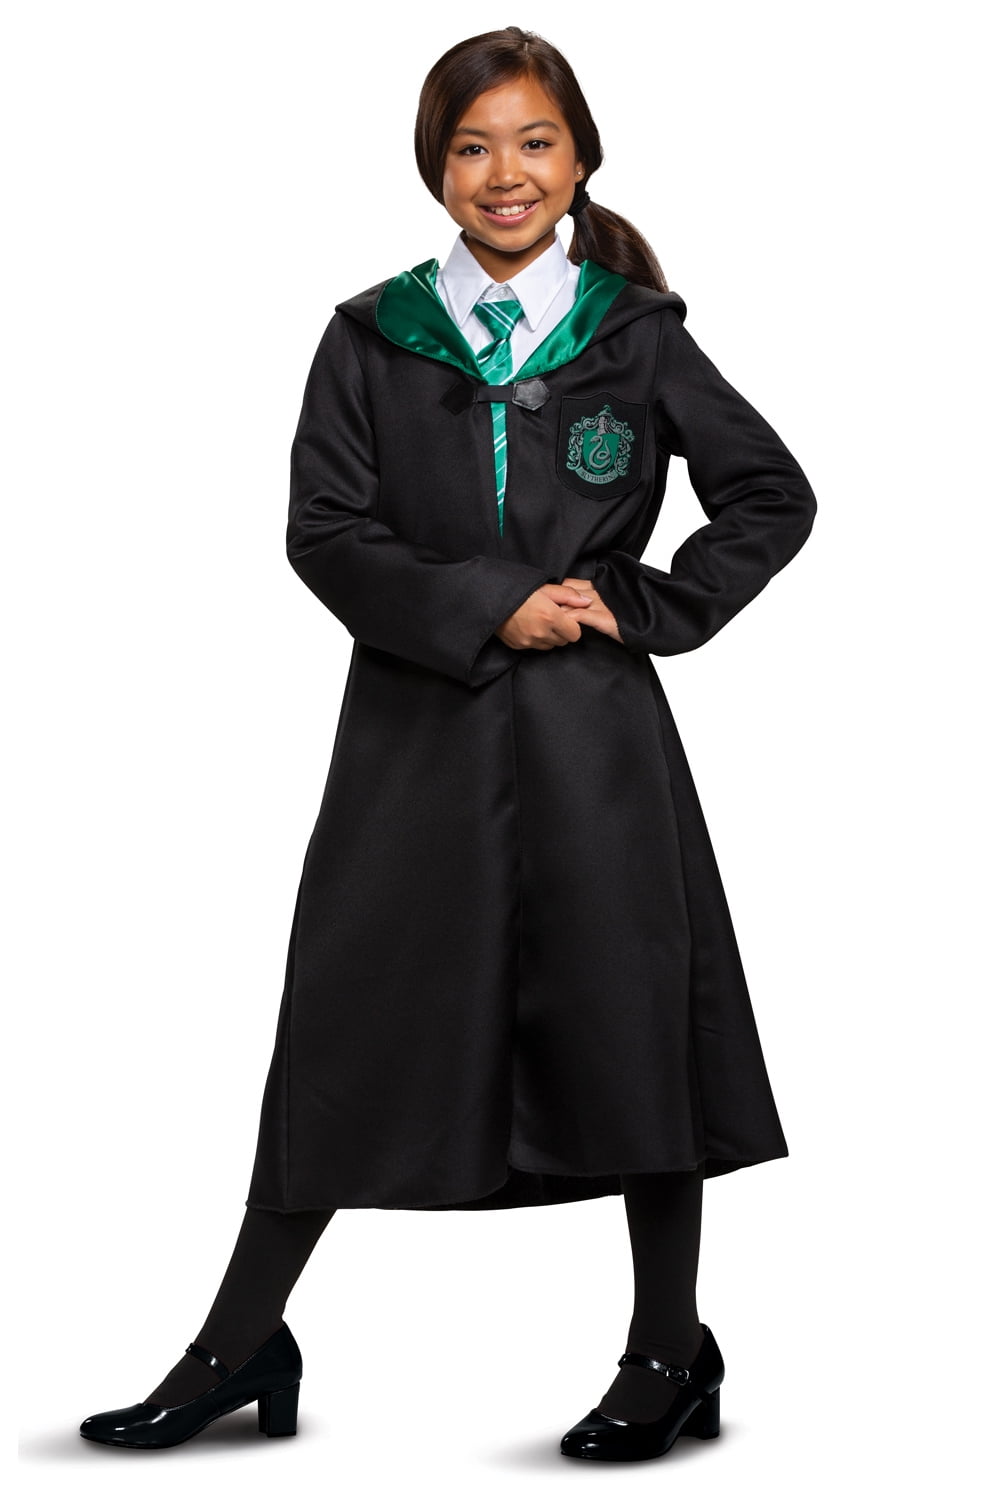 HARRY POTTER™ SLYTHERIN™ Robe & Scarf, Kids Costume